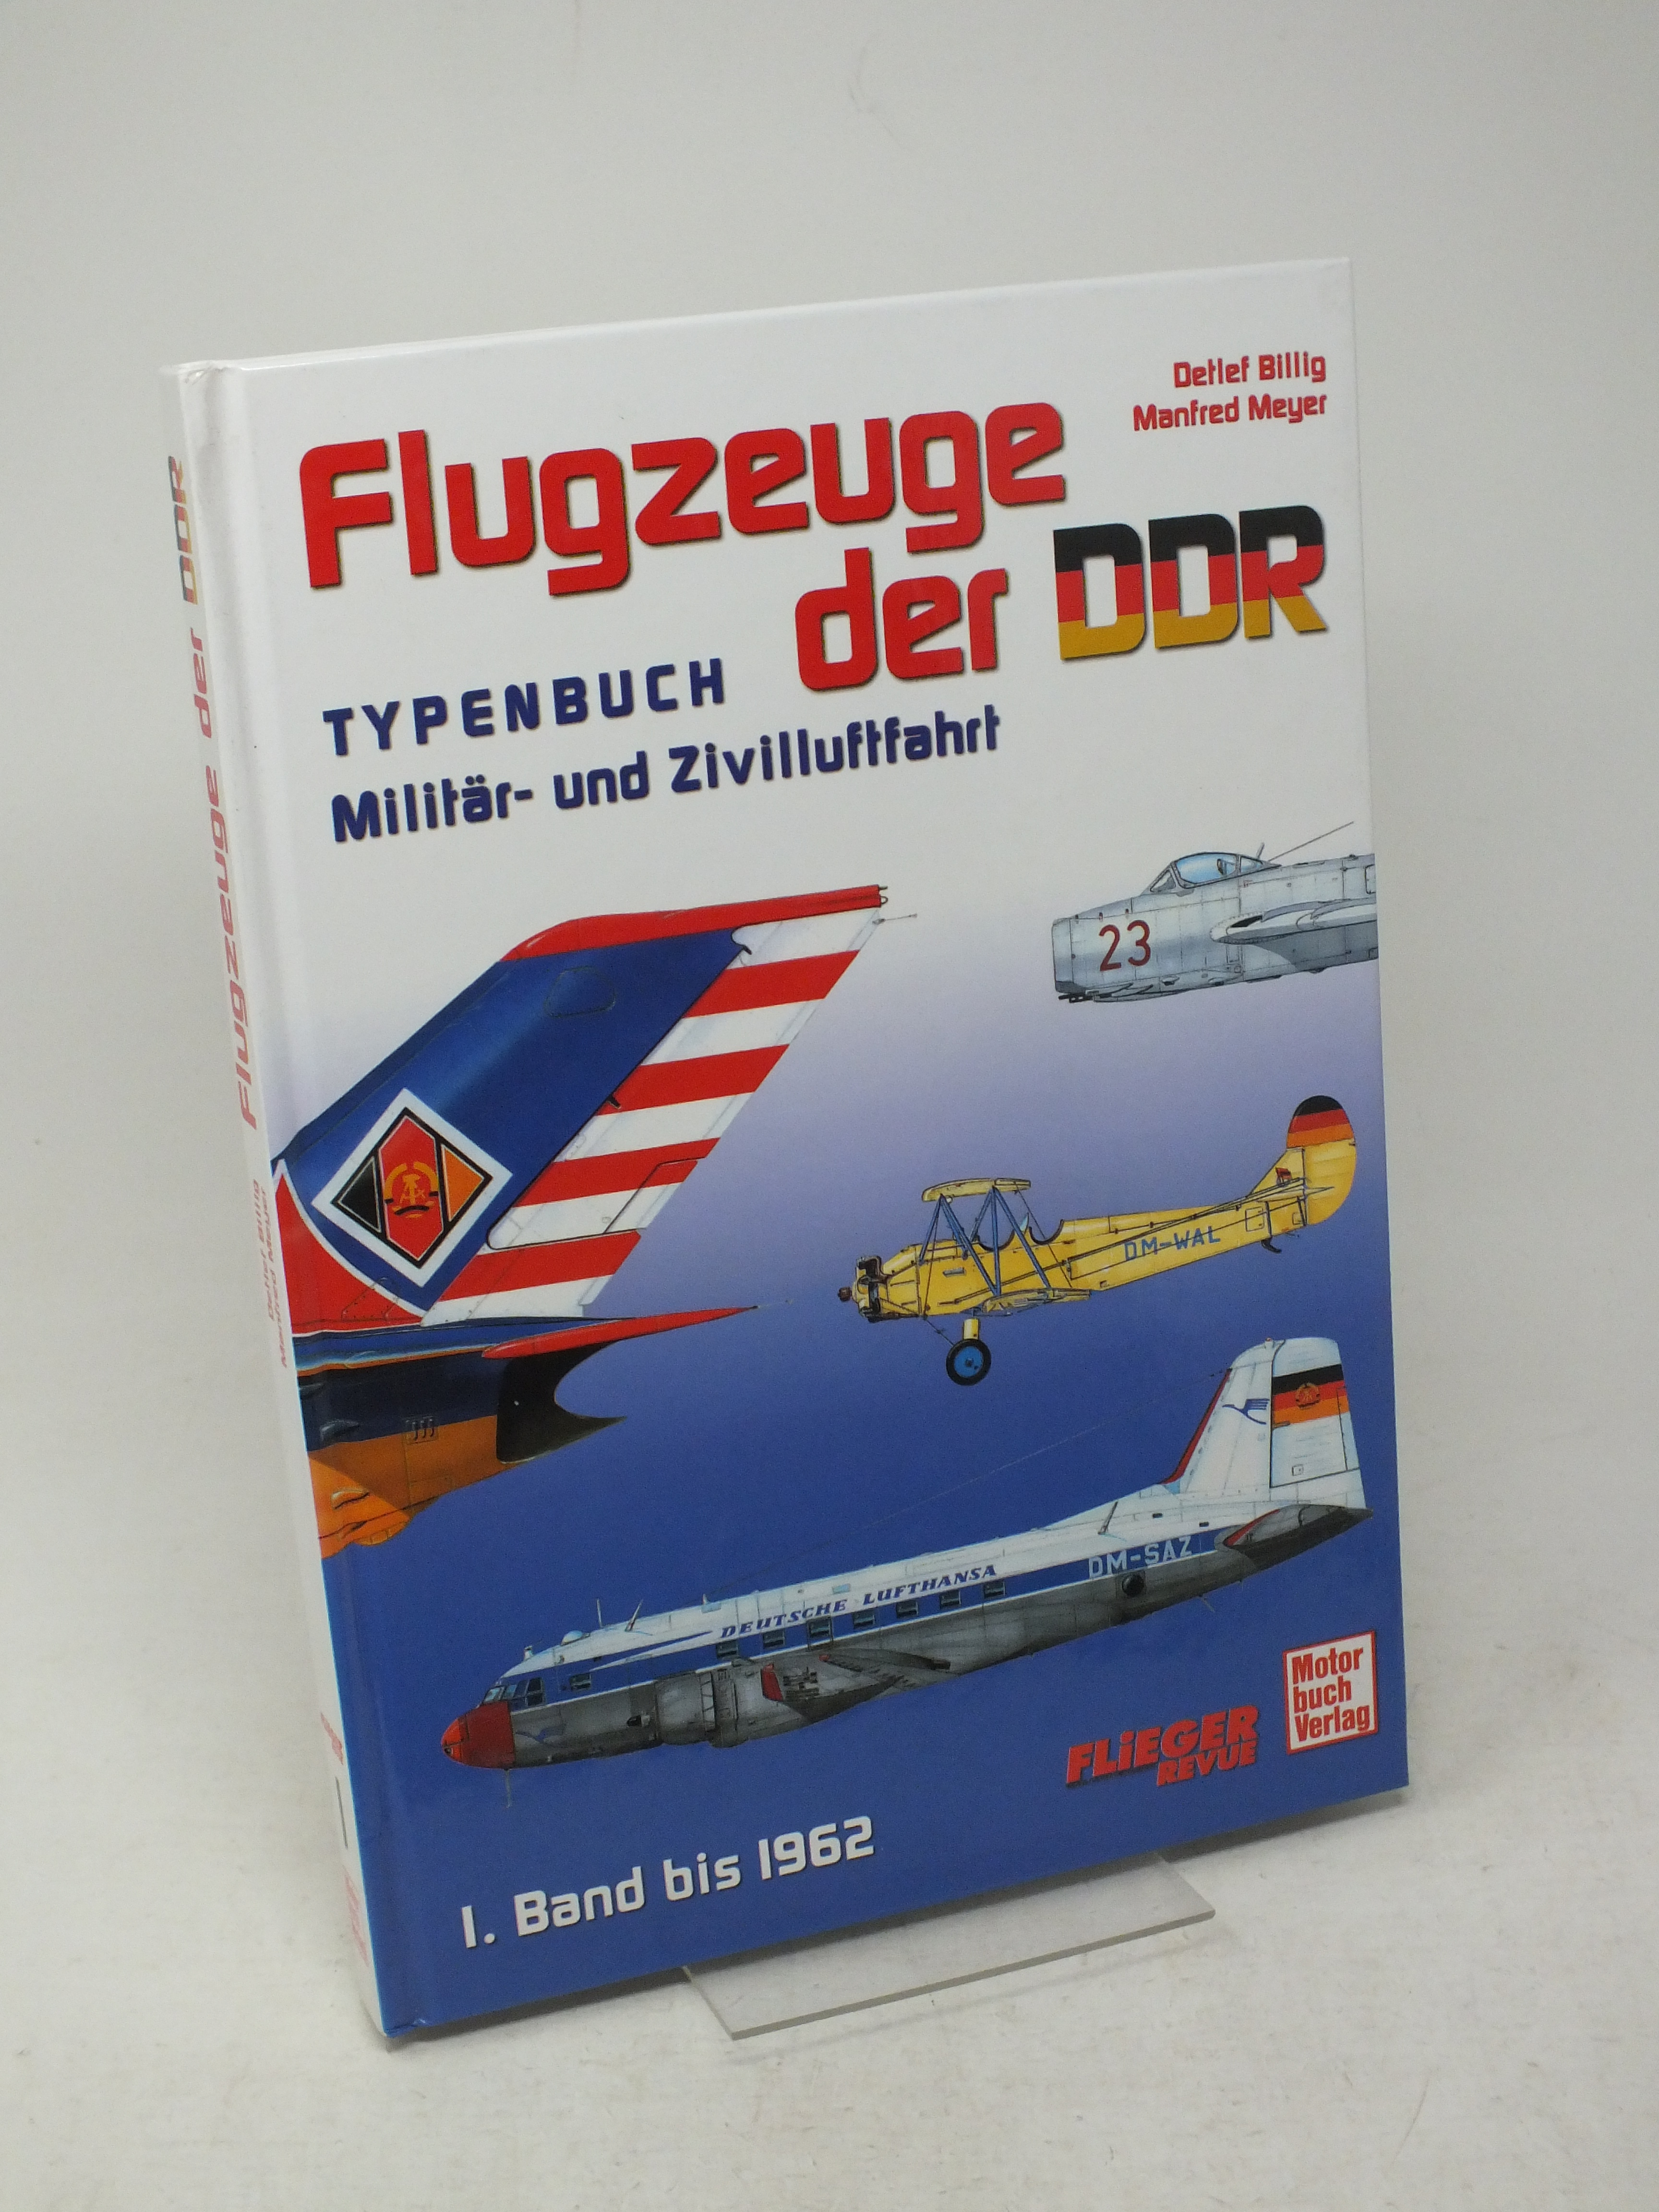 Flugzeuge der DDR - Typenbuch Milit?r- und Zivilluftfahrt. 1. Band bis 1962 - Billig, Detlef / Meyer, Manfred